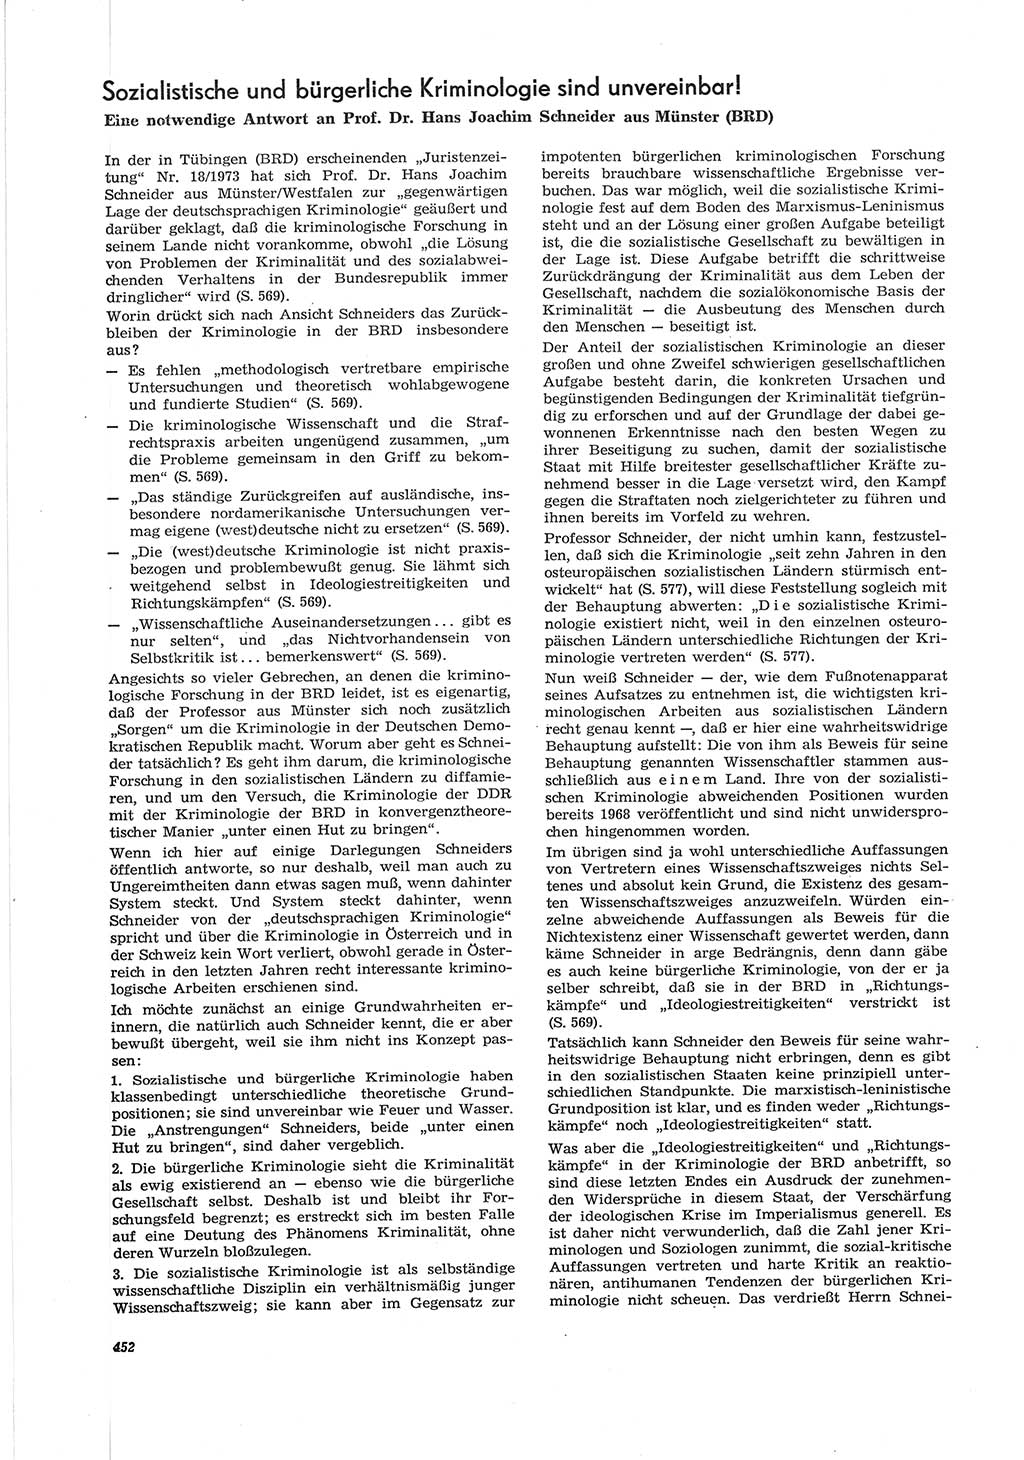 Neue Justiz (NJ), Zeitschrift für Recht und Rechtswissenschaft [Deutsche Demokratische Republik (DDR)], 28. Jahrgang 1974, Seite 452 (NJ DDR 1974, S. 452)